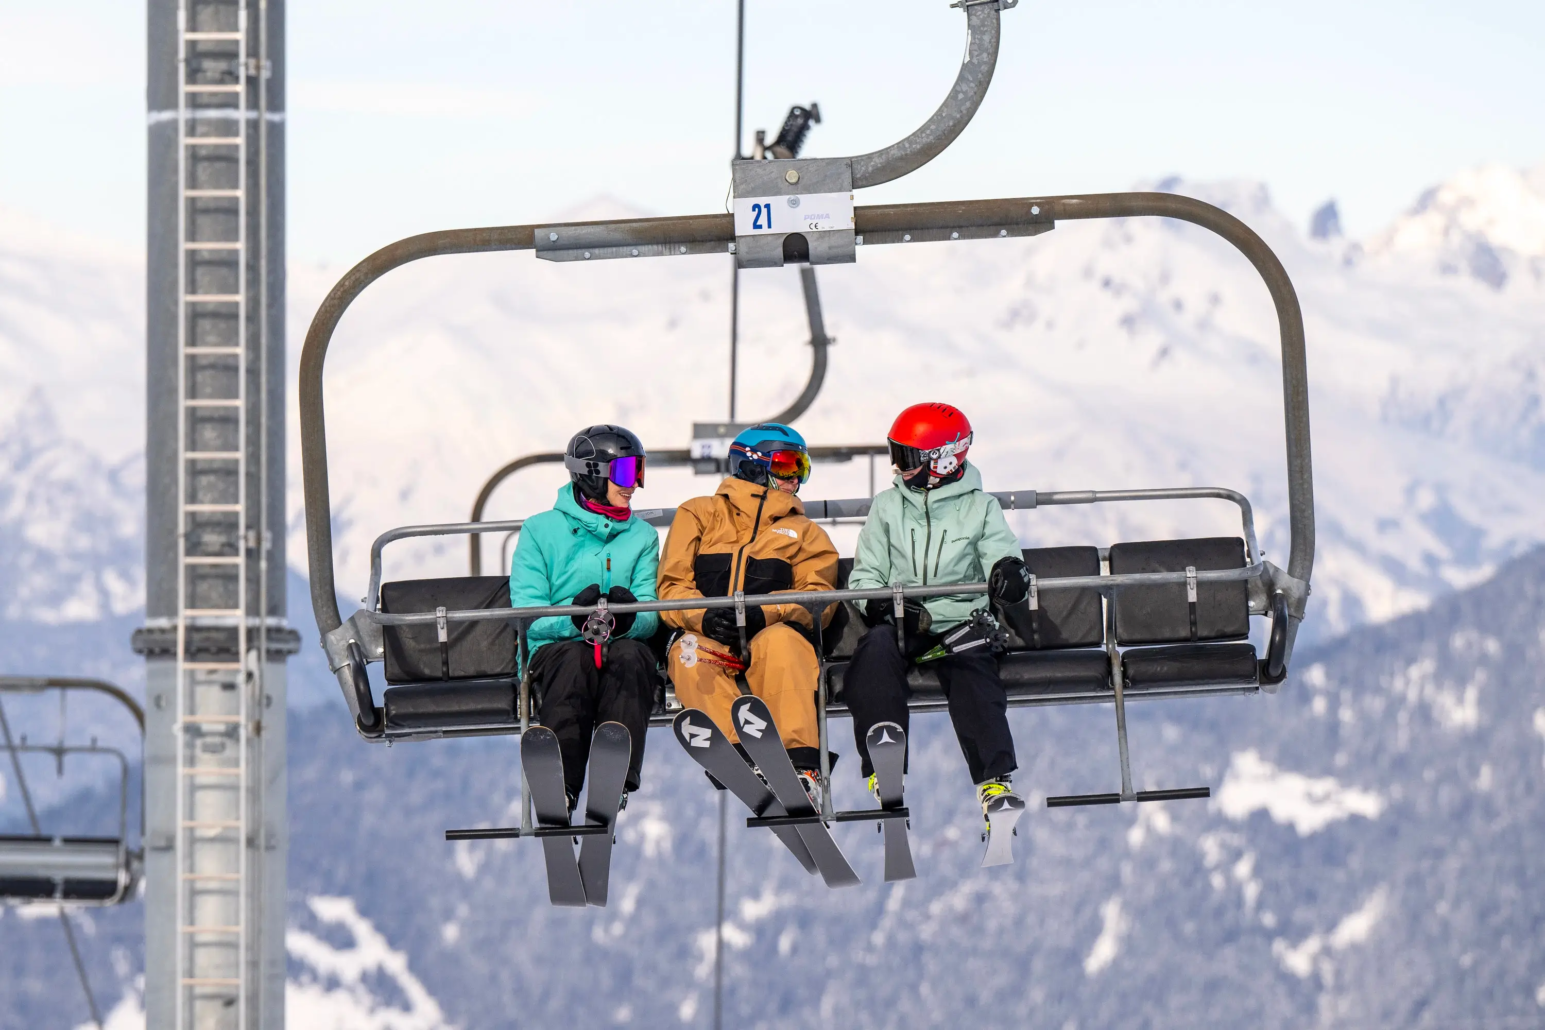 first ski lifts